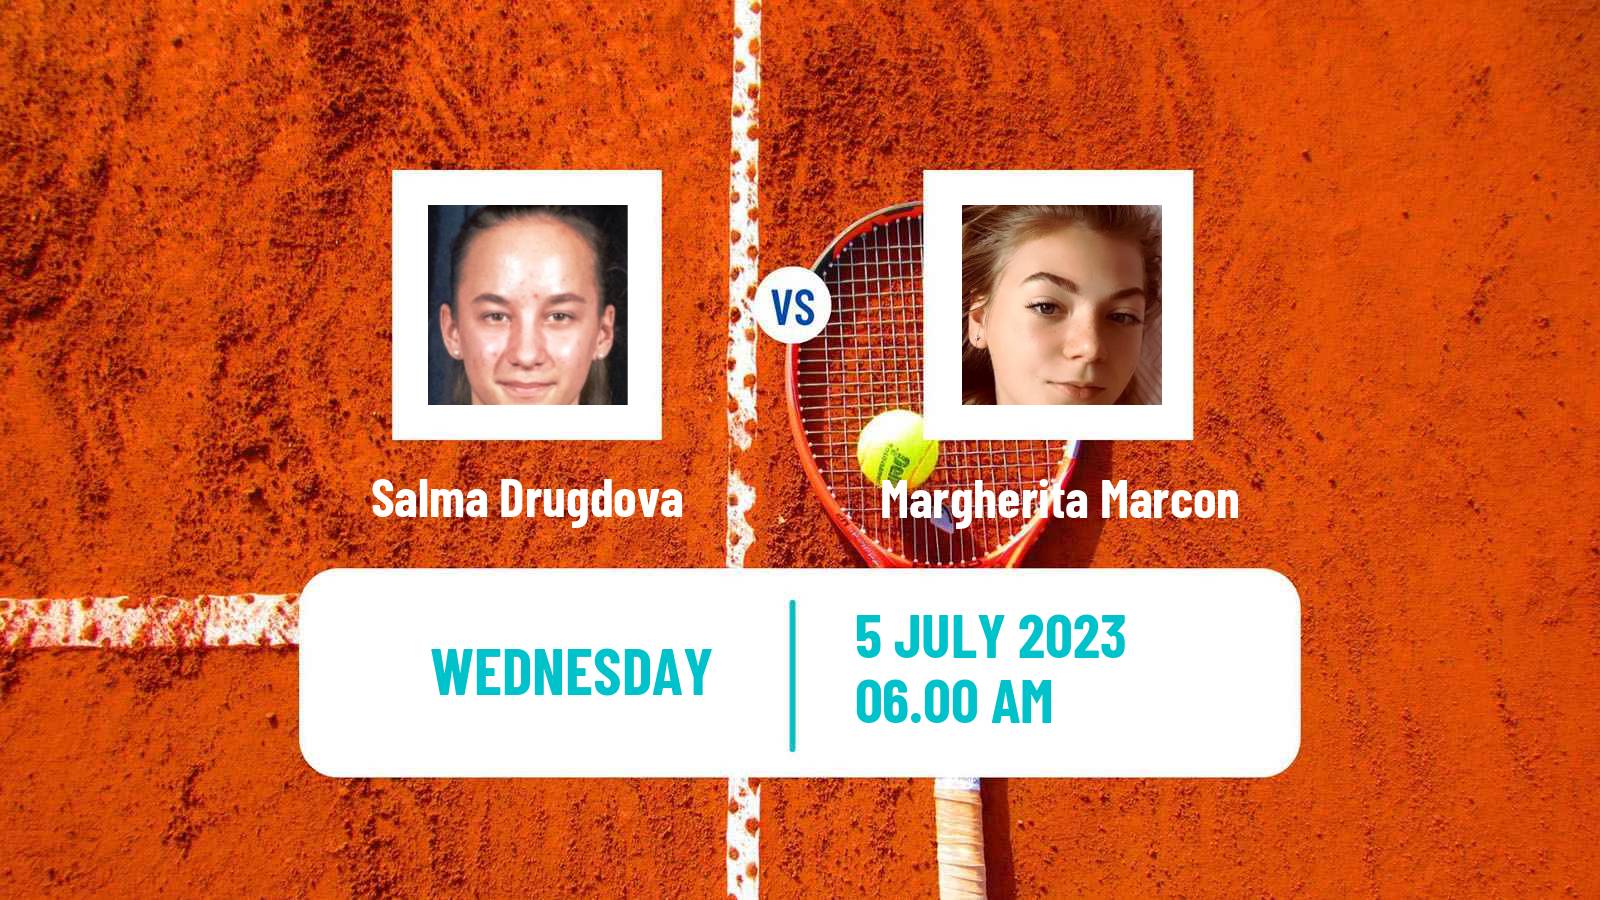 Tennis ITF W15 Monastir 22 Women Salma Drugdova - Margherita Marcon